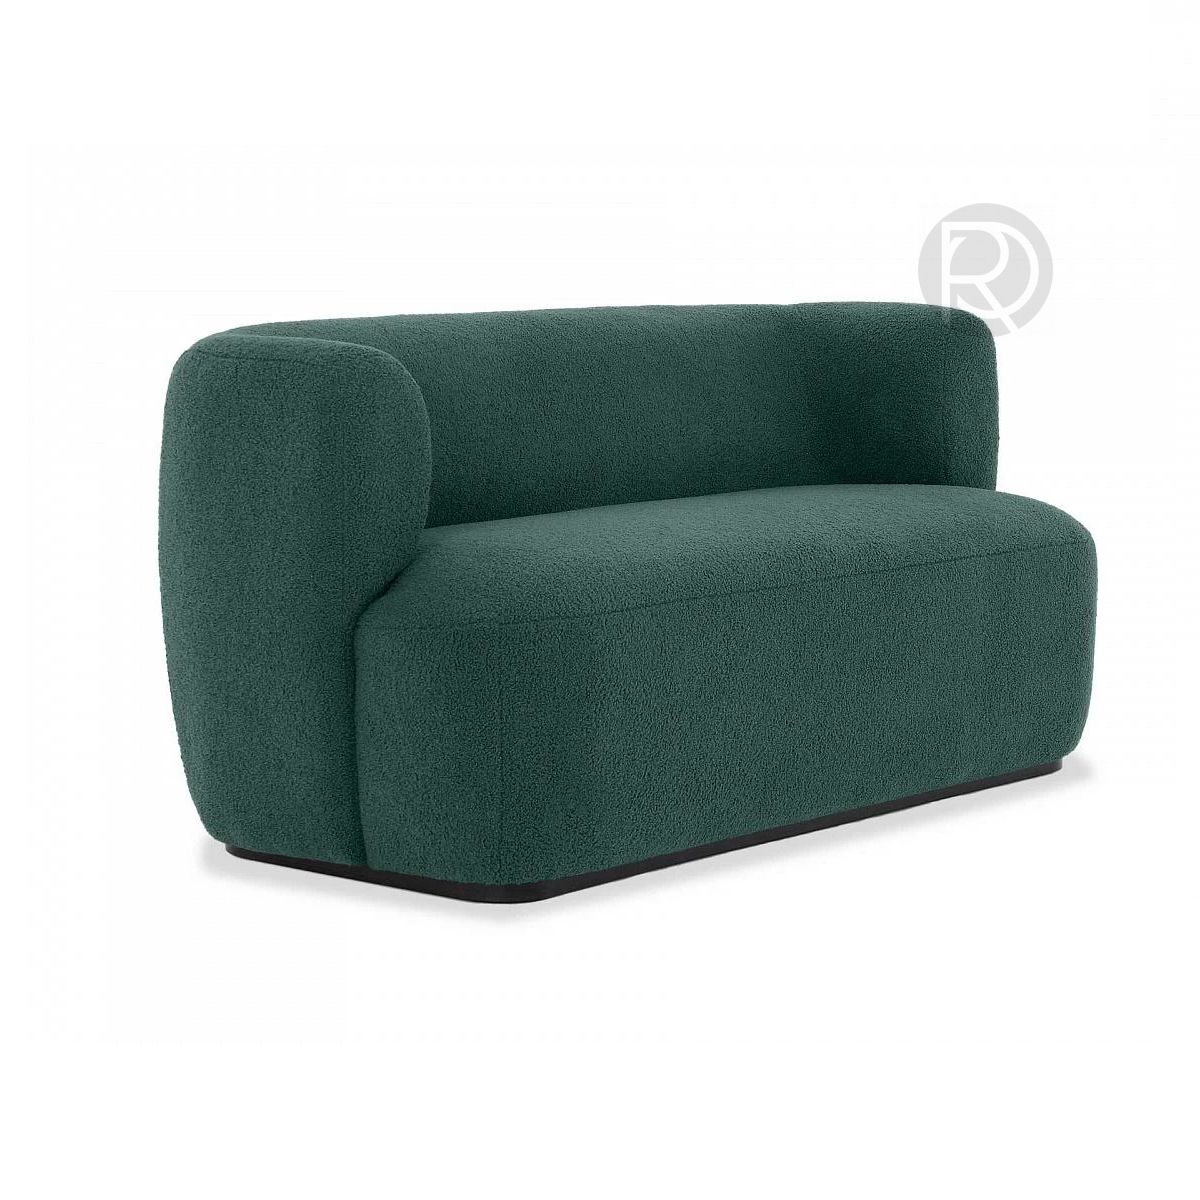 LIVORNO sofa by Romatti